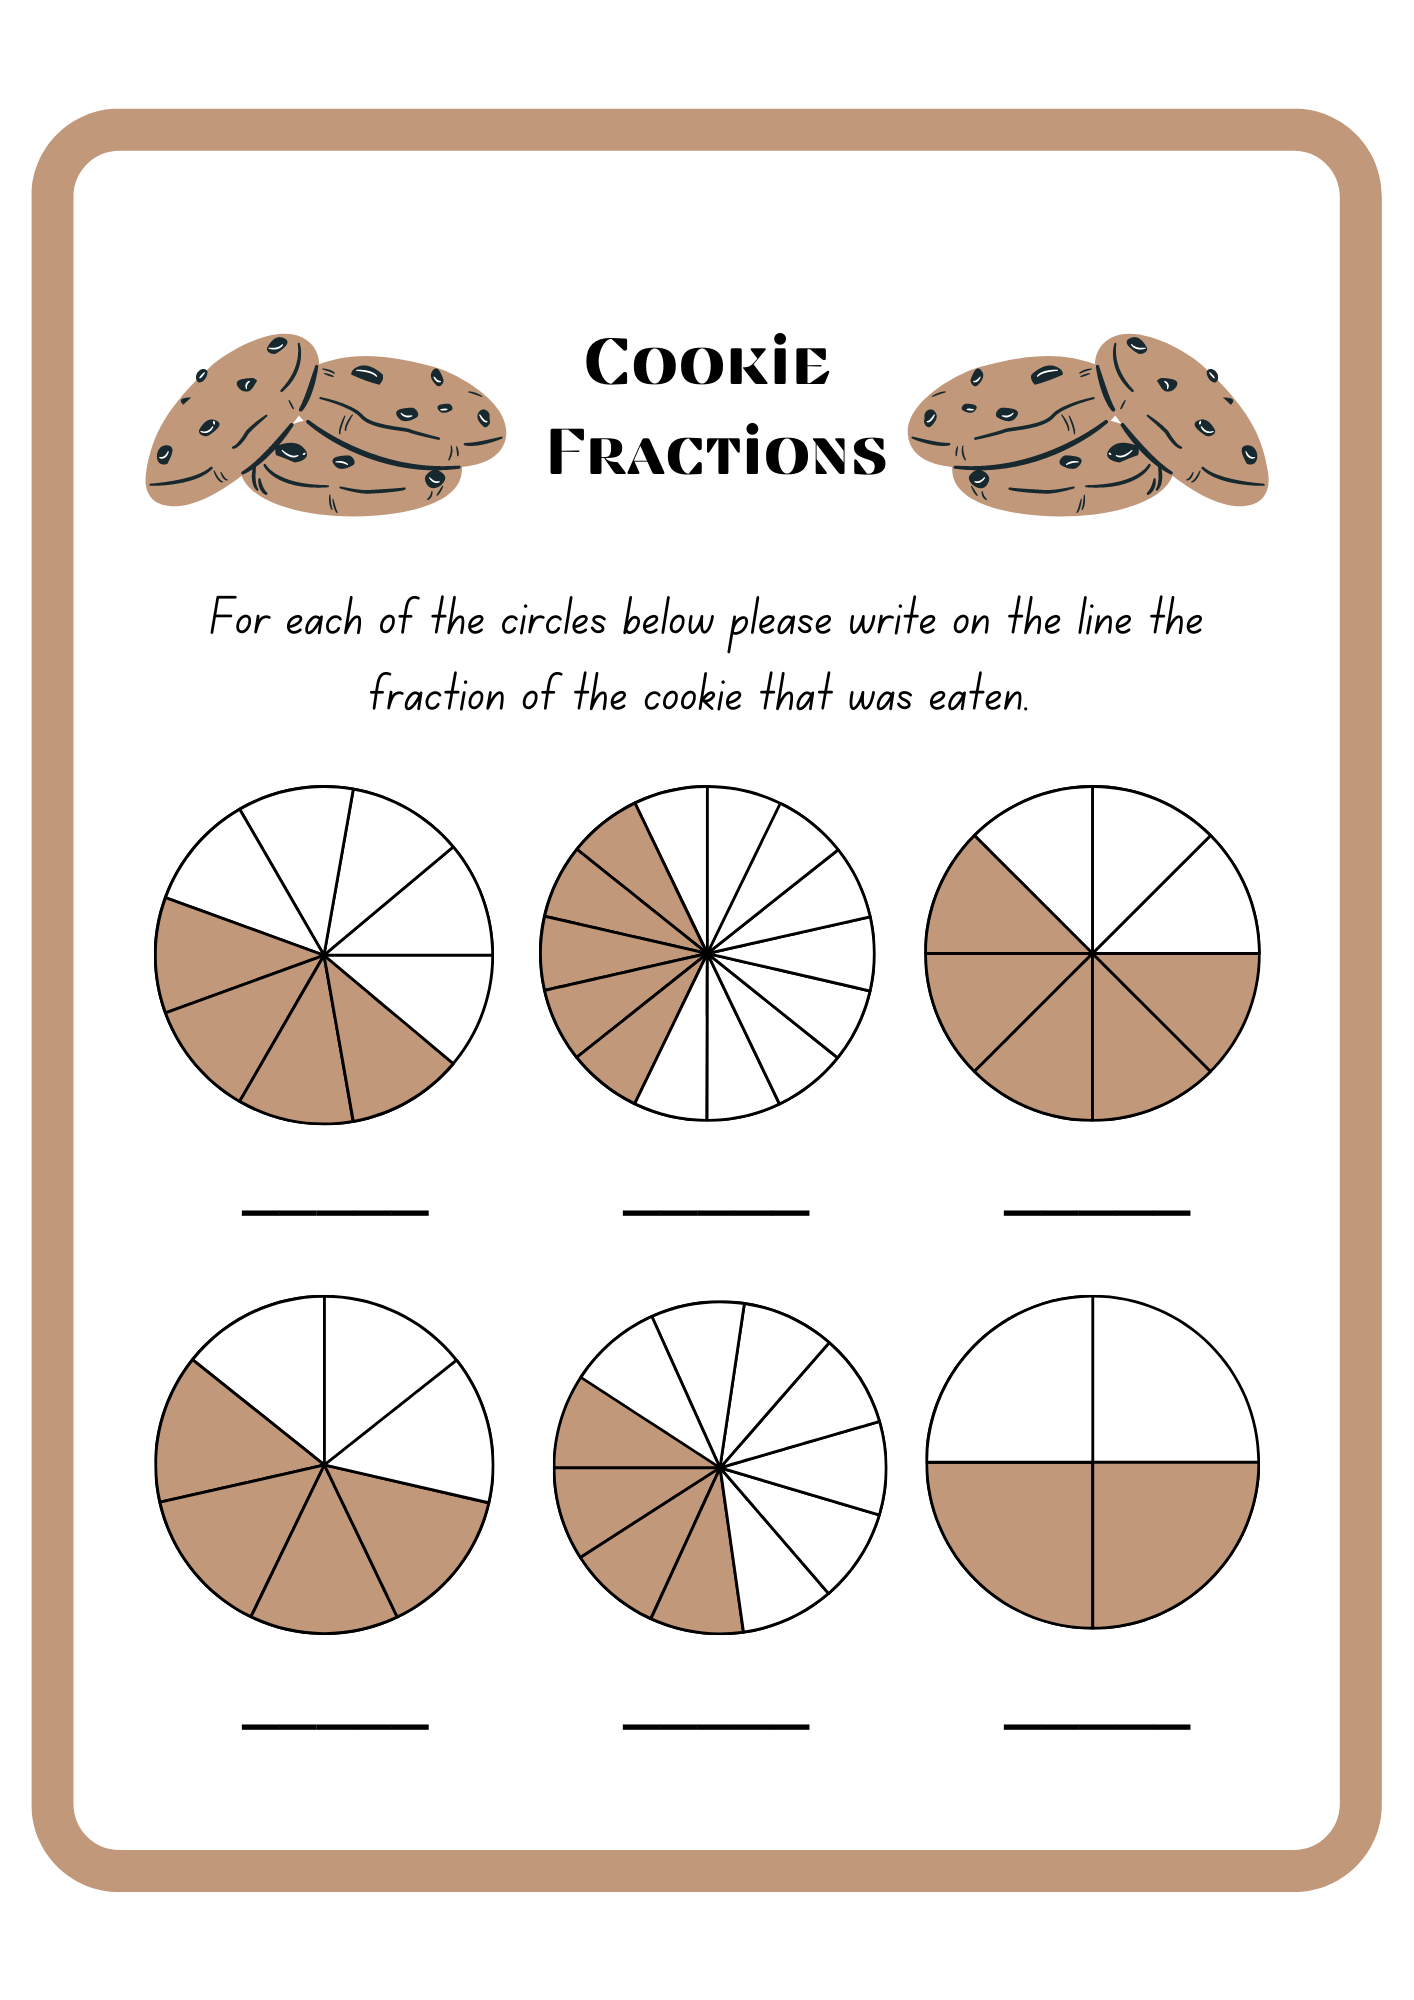 Cookie Fractions Wordsearch Worksheet